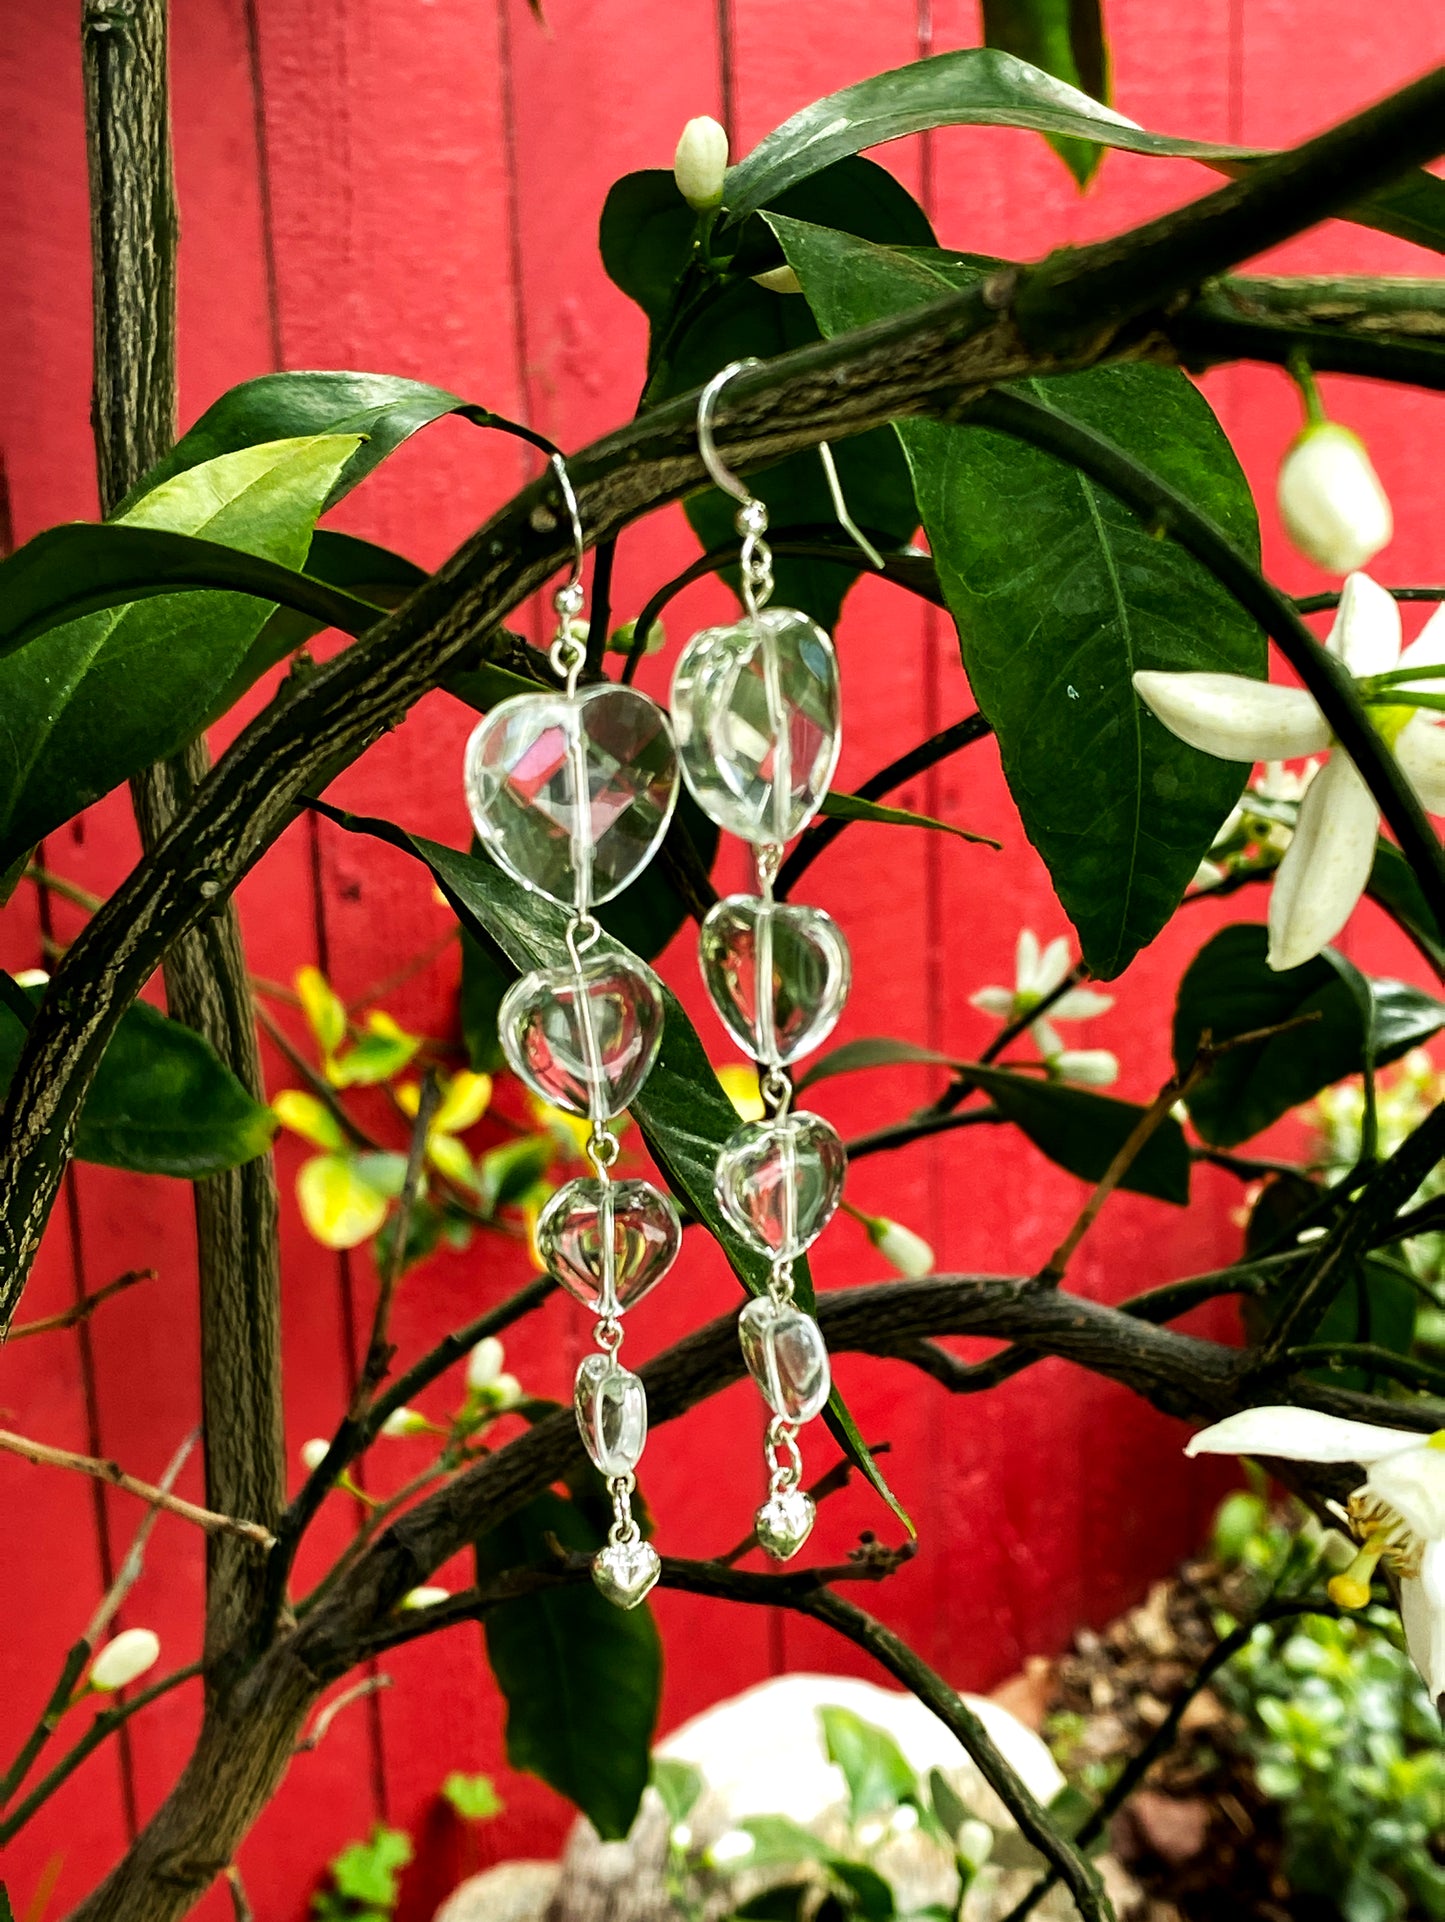 Four Clear Quartz Gemstone Hearts & sterling silver heart drop earrings